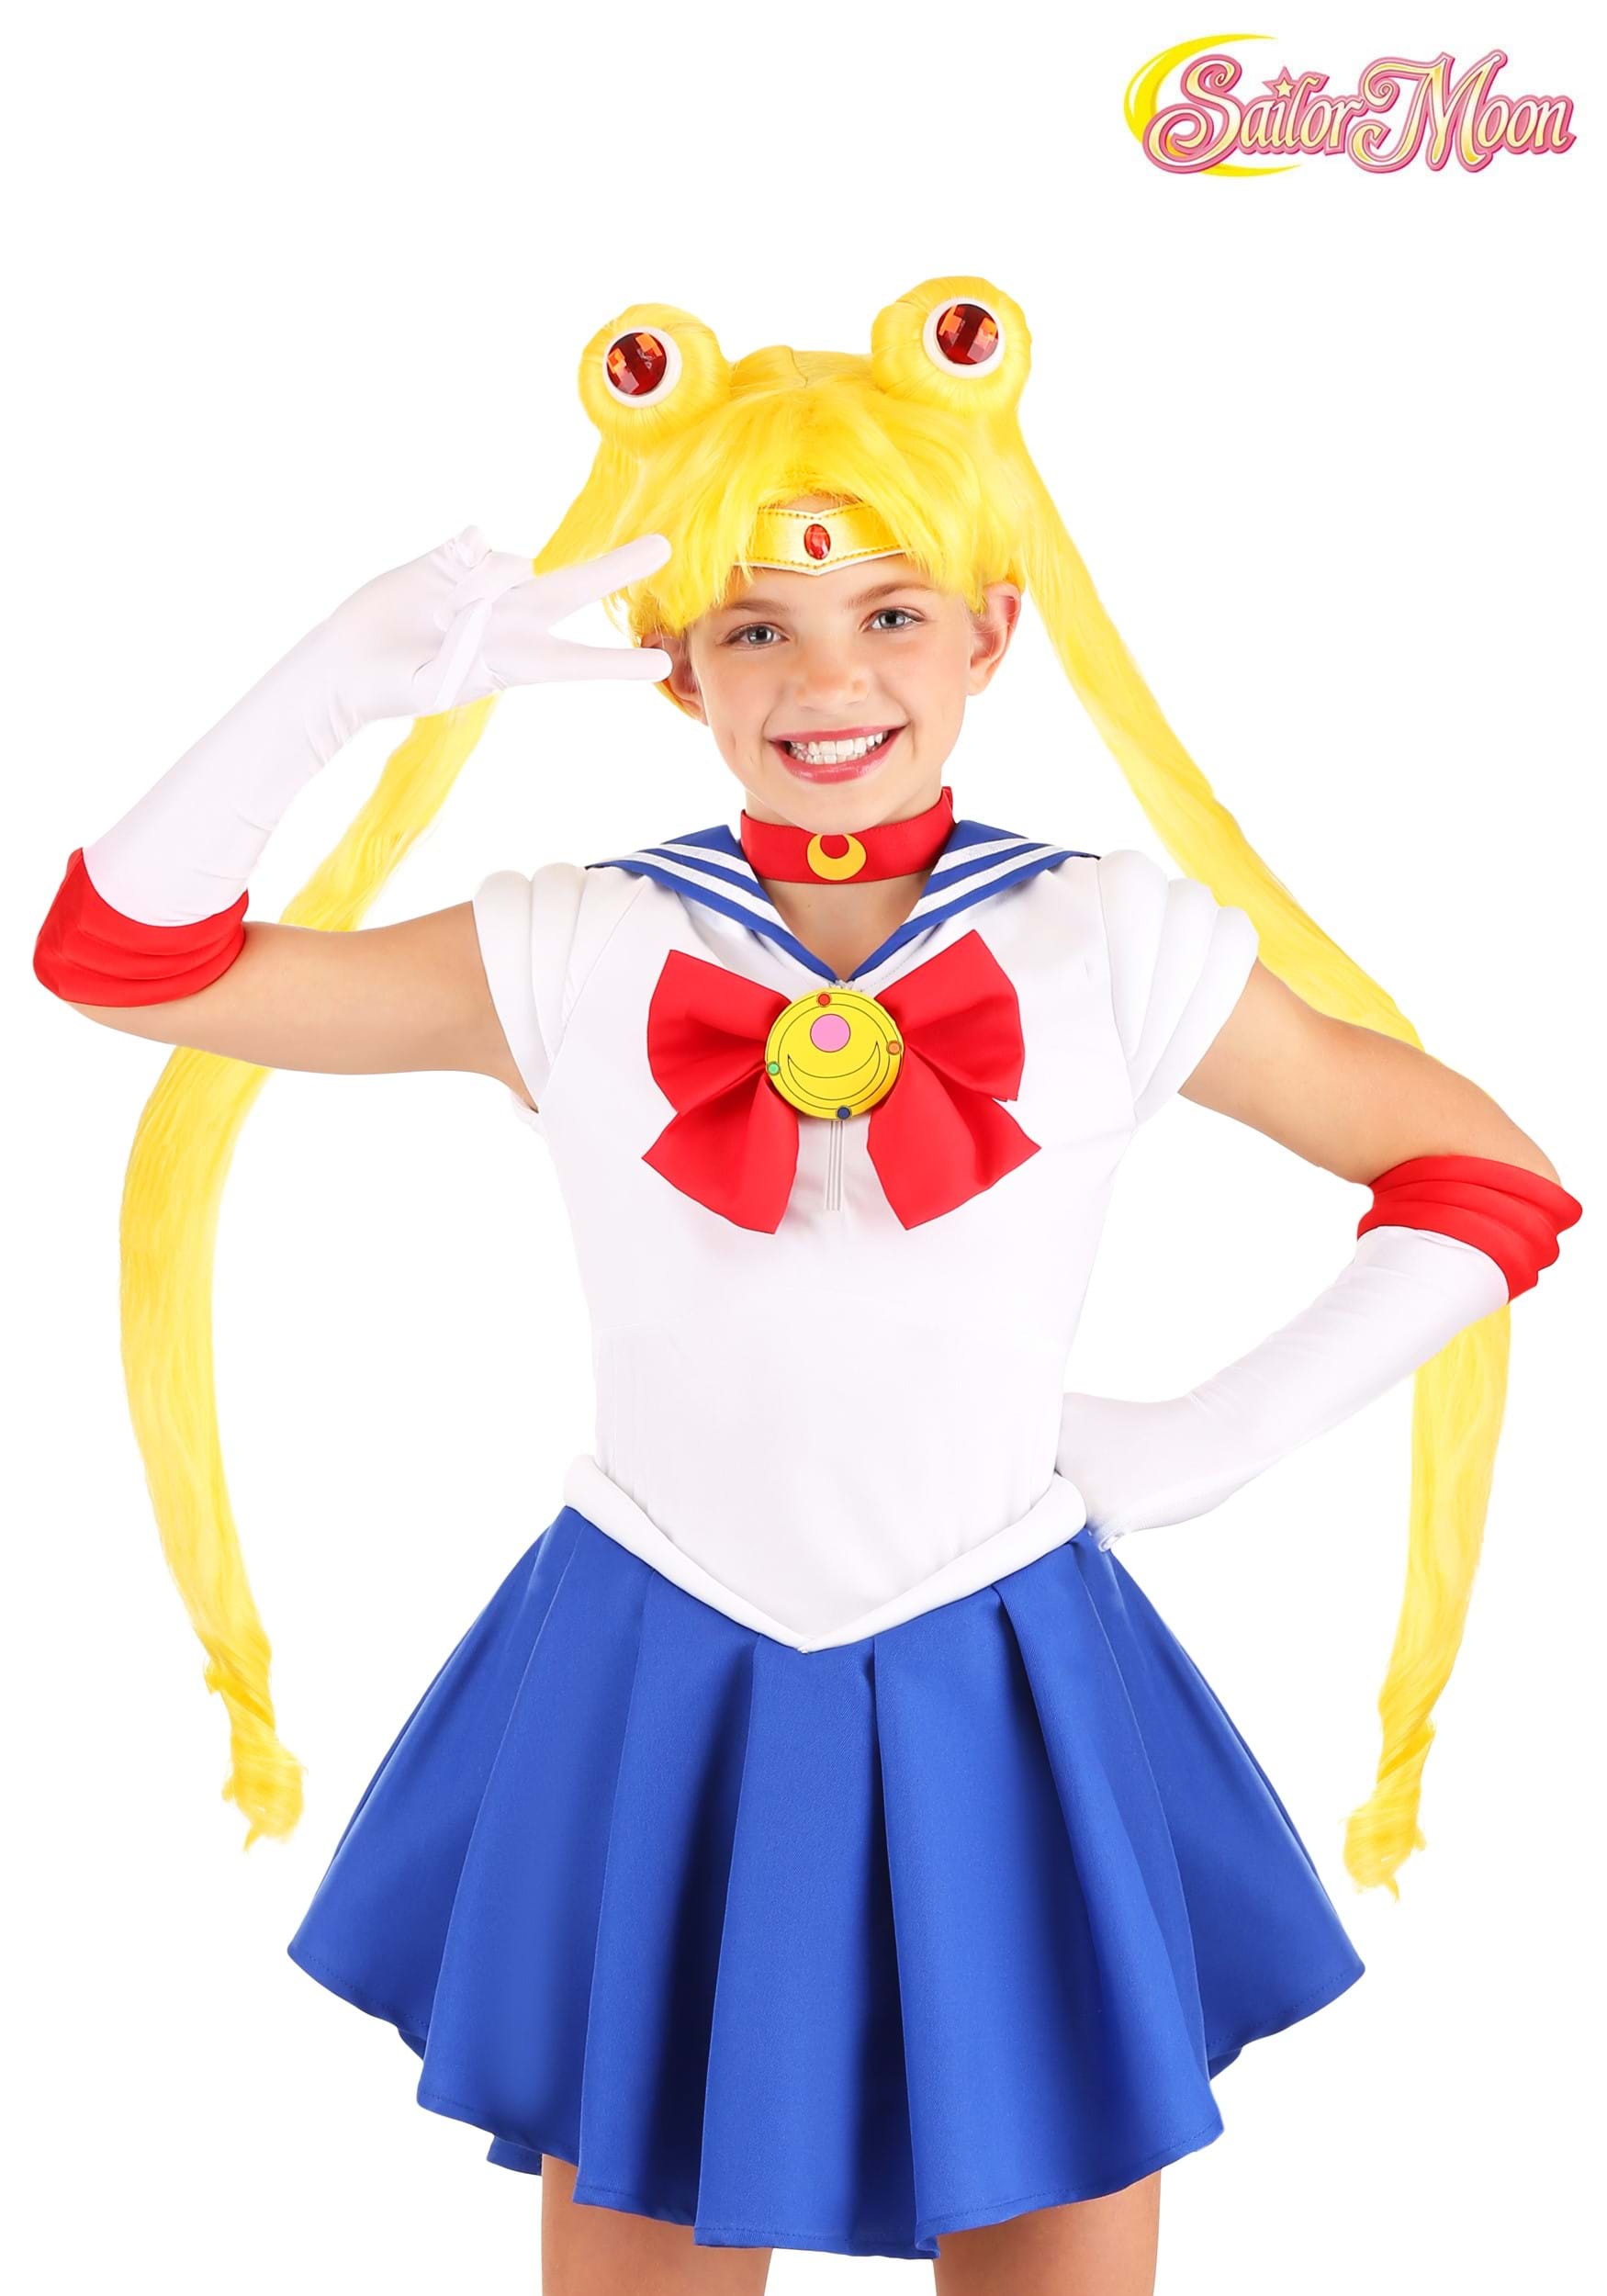 Sailor Moon Kid’s Wig